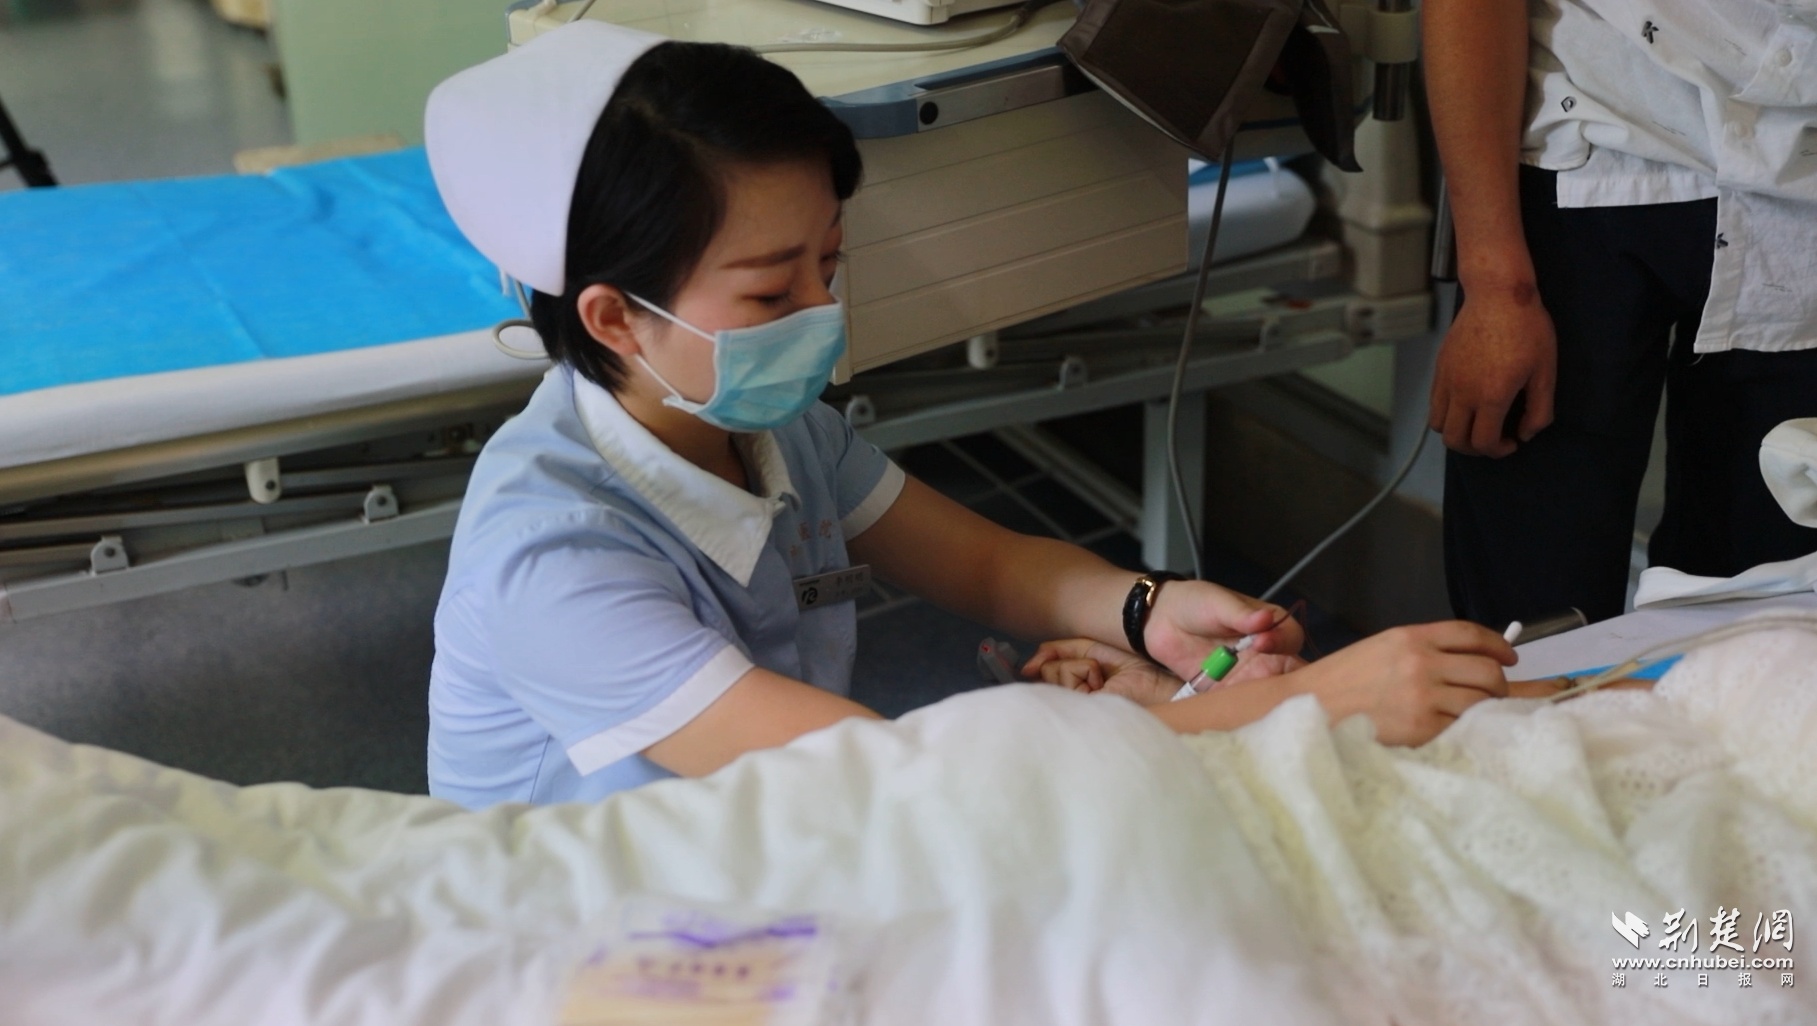 这个护士不简单 湖北省荣军医院有个“小发明家”